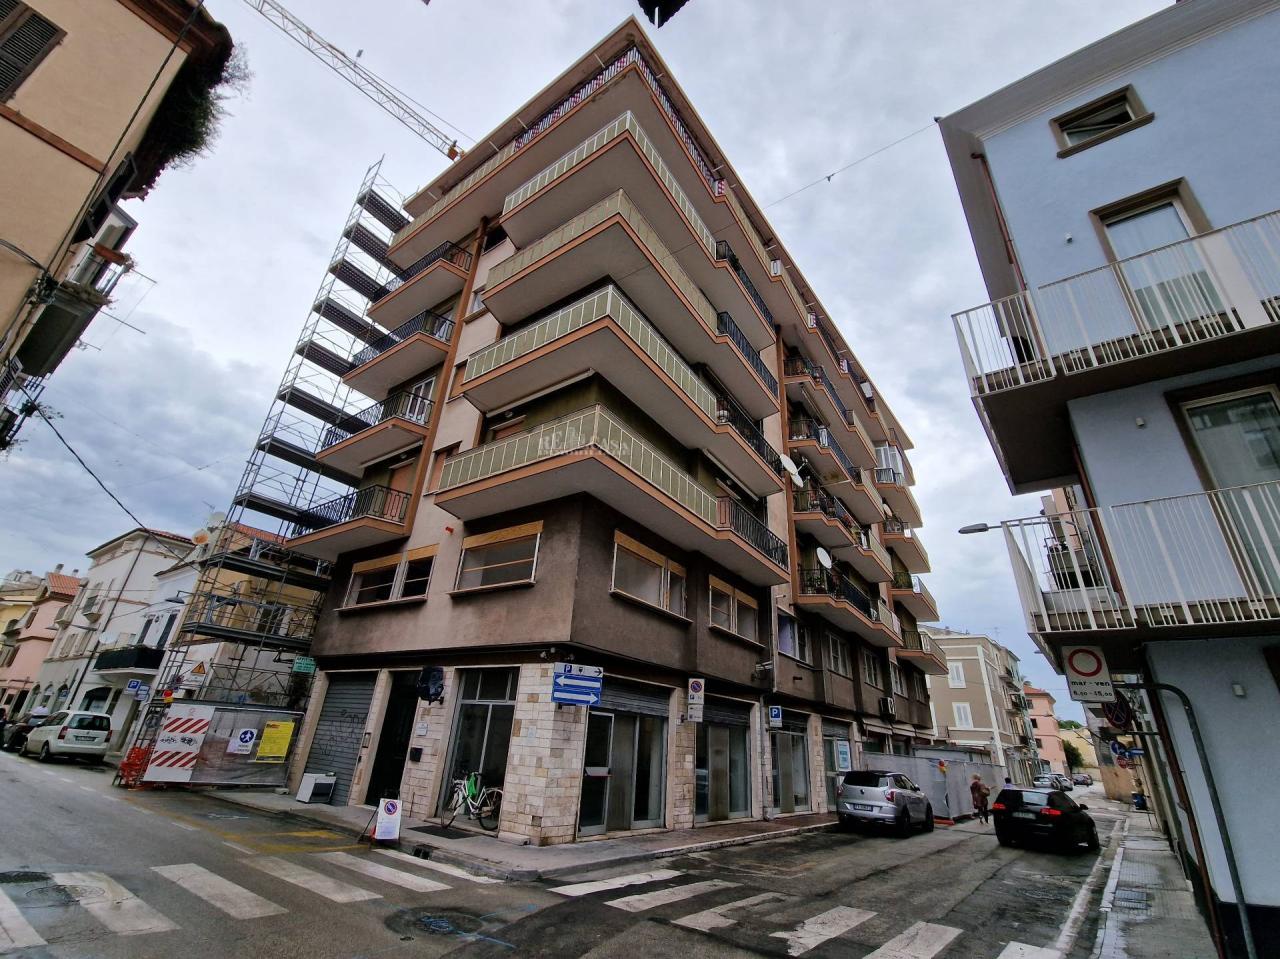 Vendita Appartamento, San Benedetto del Tronto foto